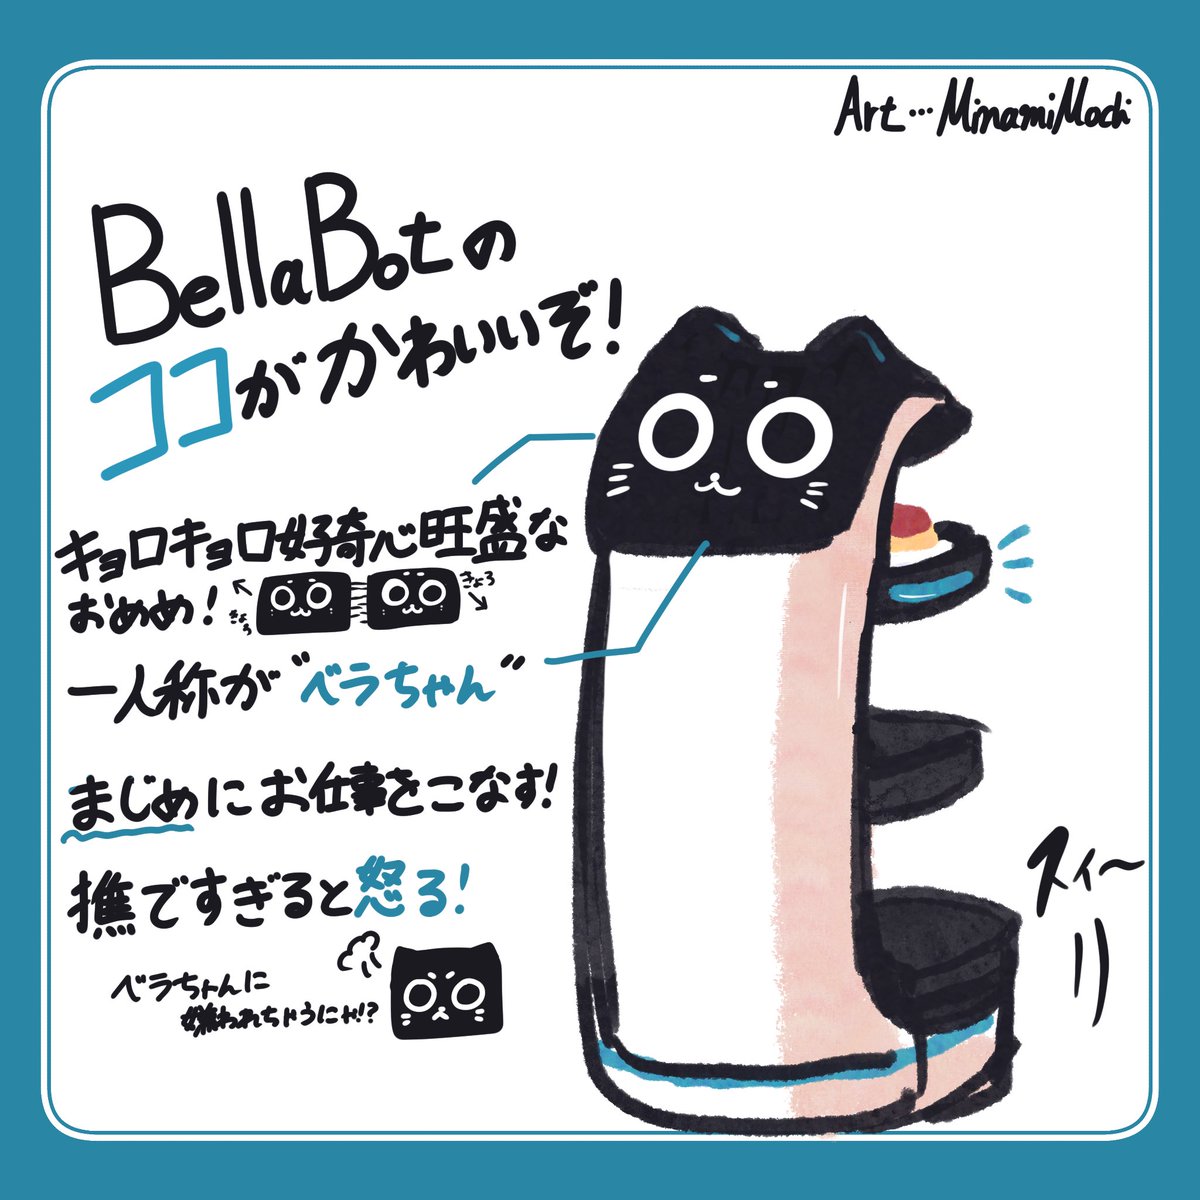 去年描いたベラちゃん再掲(∩˃o˂∩)♡

 #猫の日   #猫型ロボット  #BellaBot